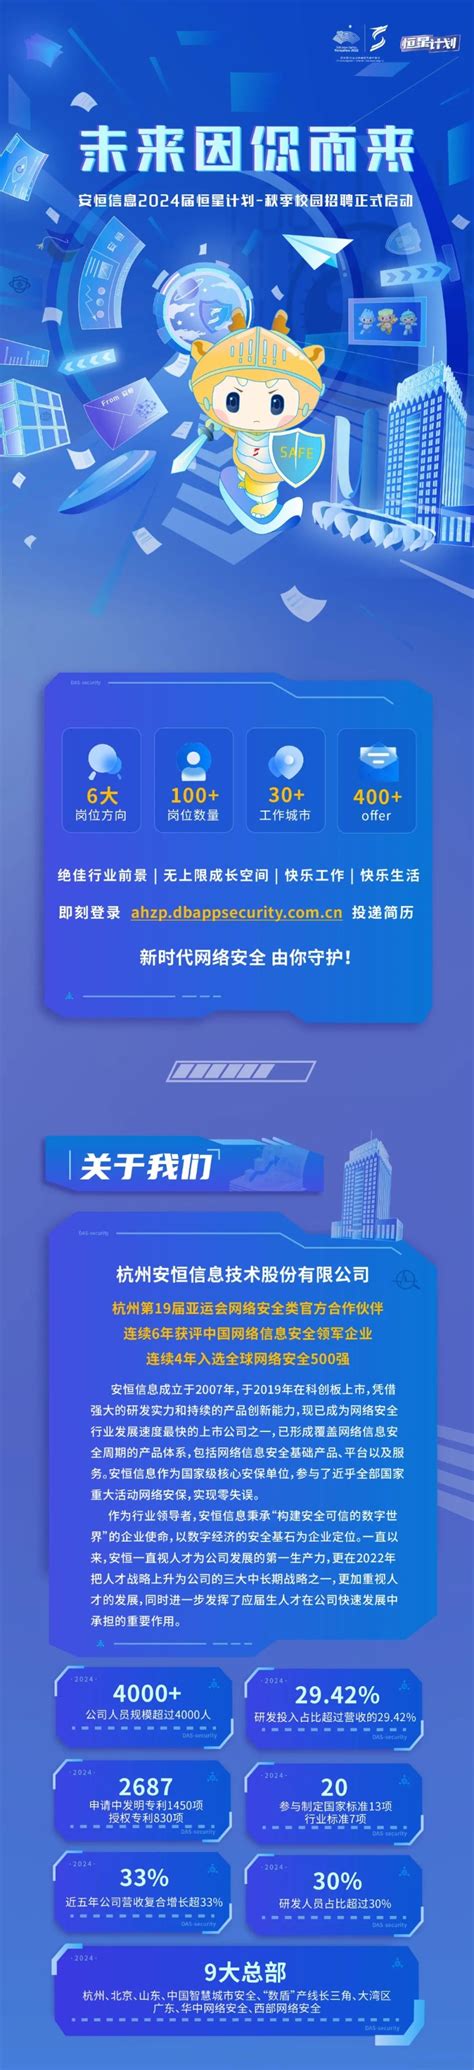 恩施恒星北京现代-4S店地址-电话-最新现代促销优惠活动-车主指南